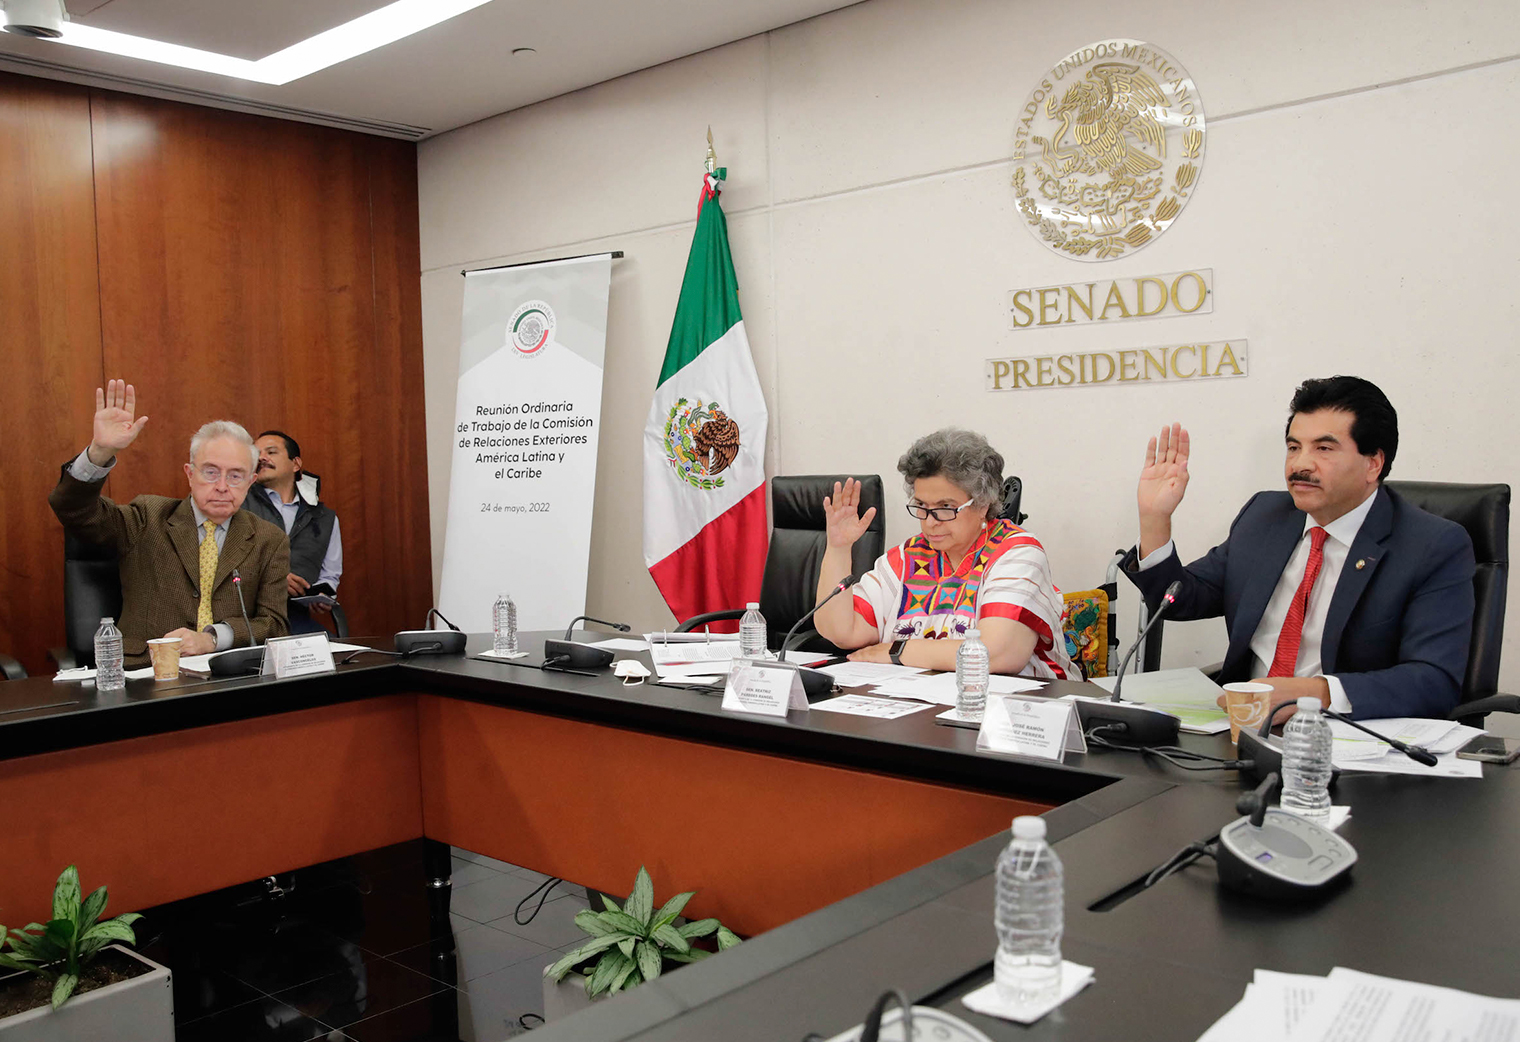 Reunión de la Comisión de Relaciones Exteriores América Latina y el Caribe